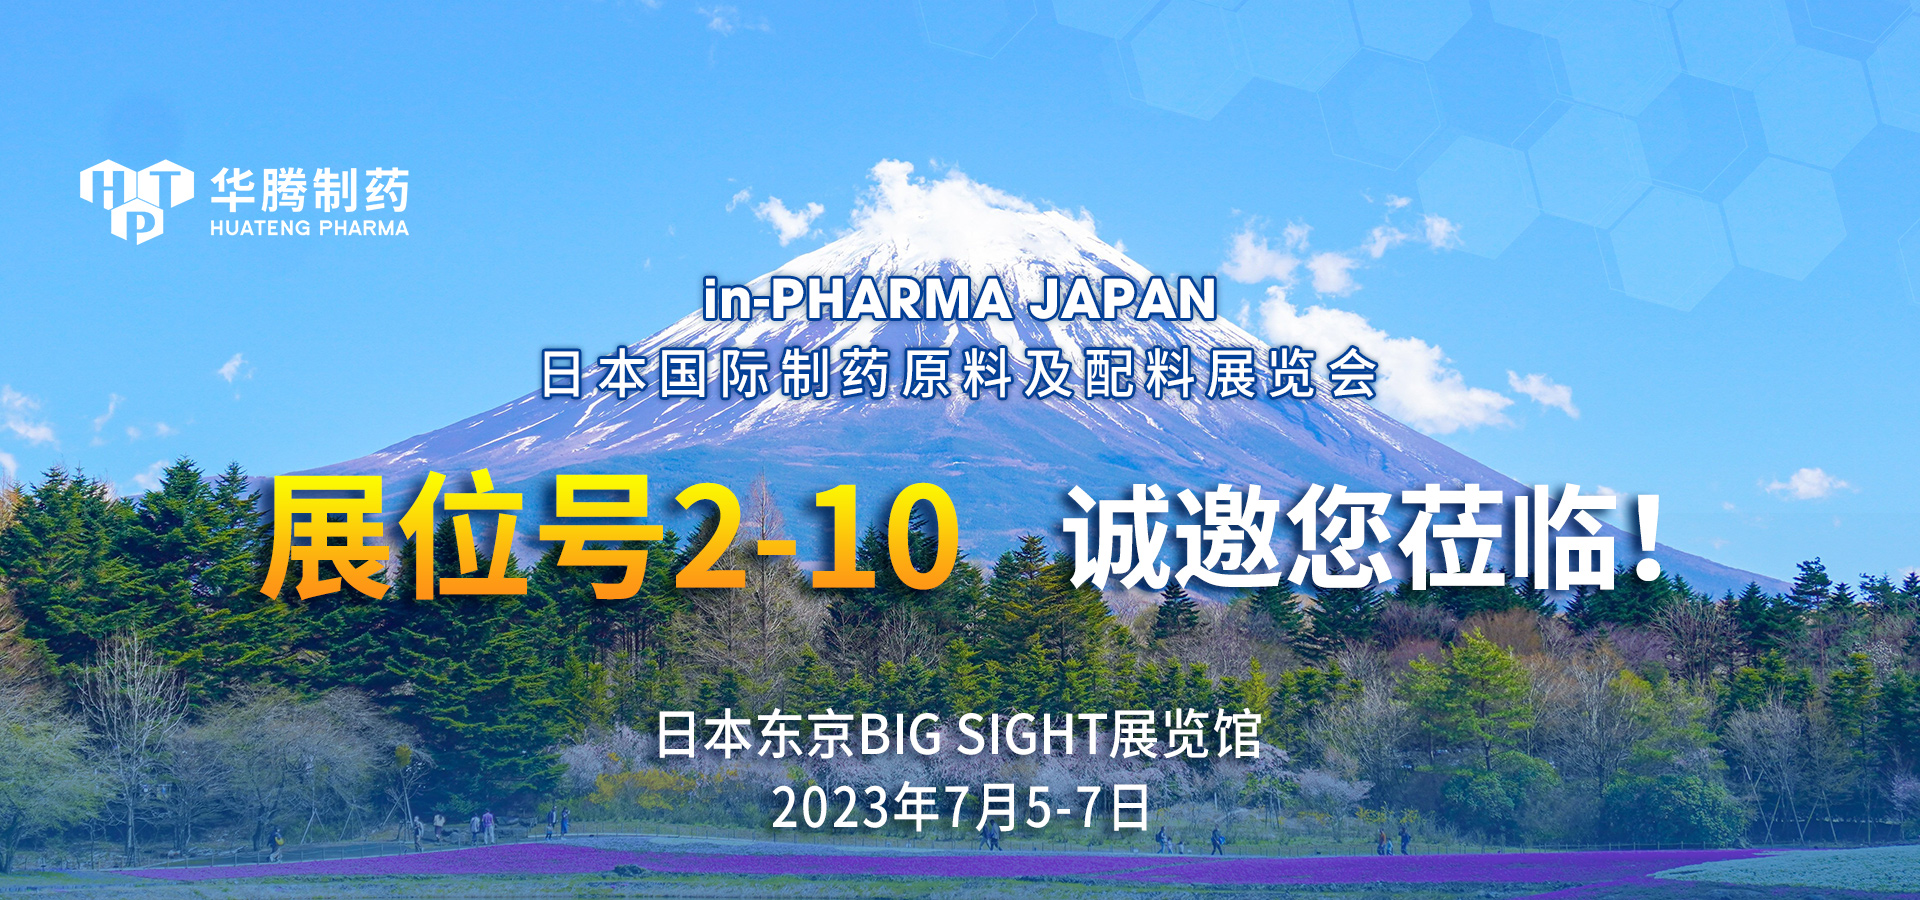 【展會邀約】華騰制藥邀您相聚in-PHARMA JAPAN